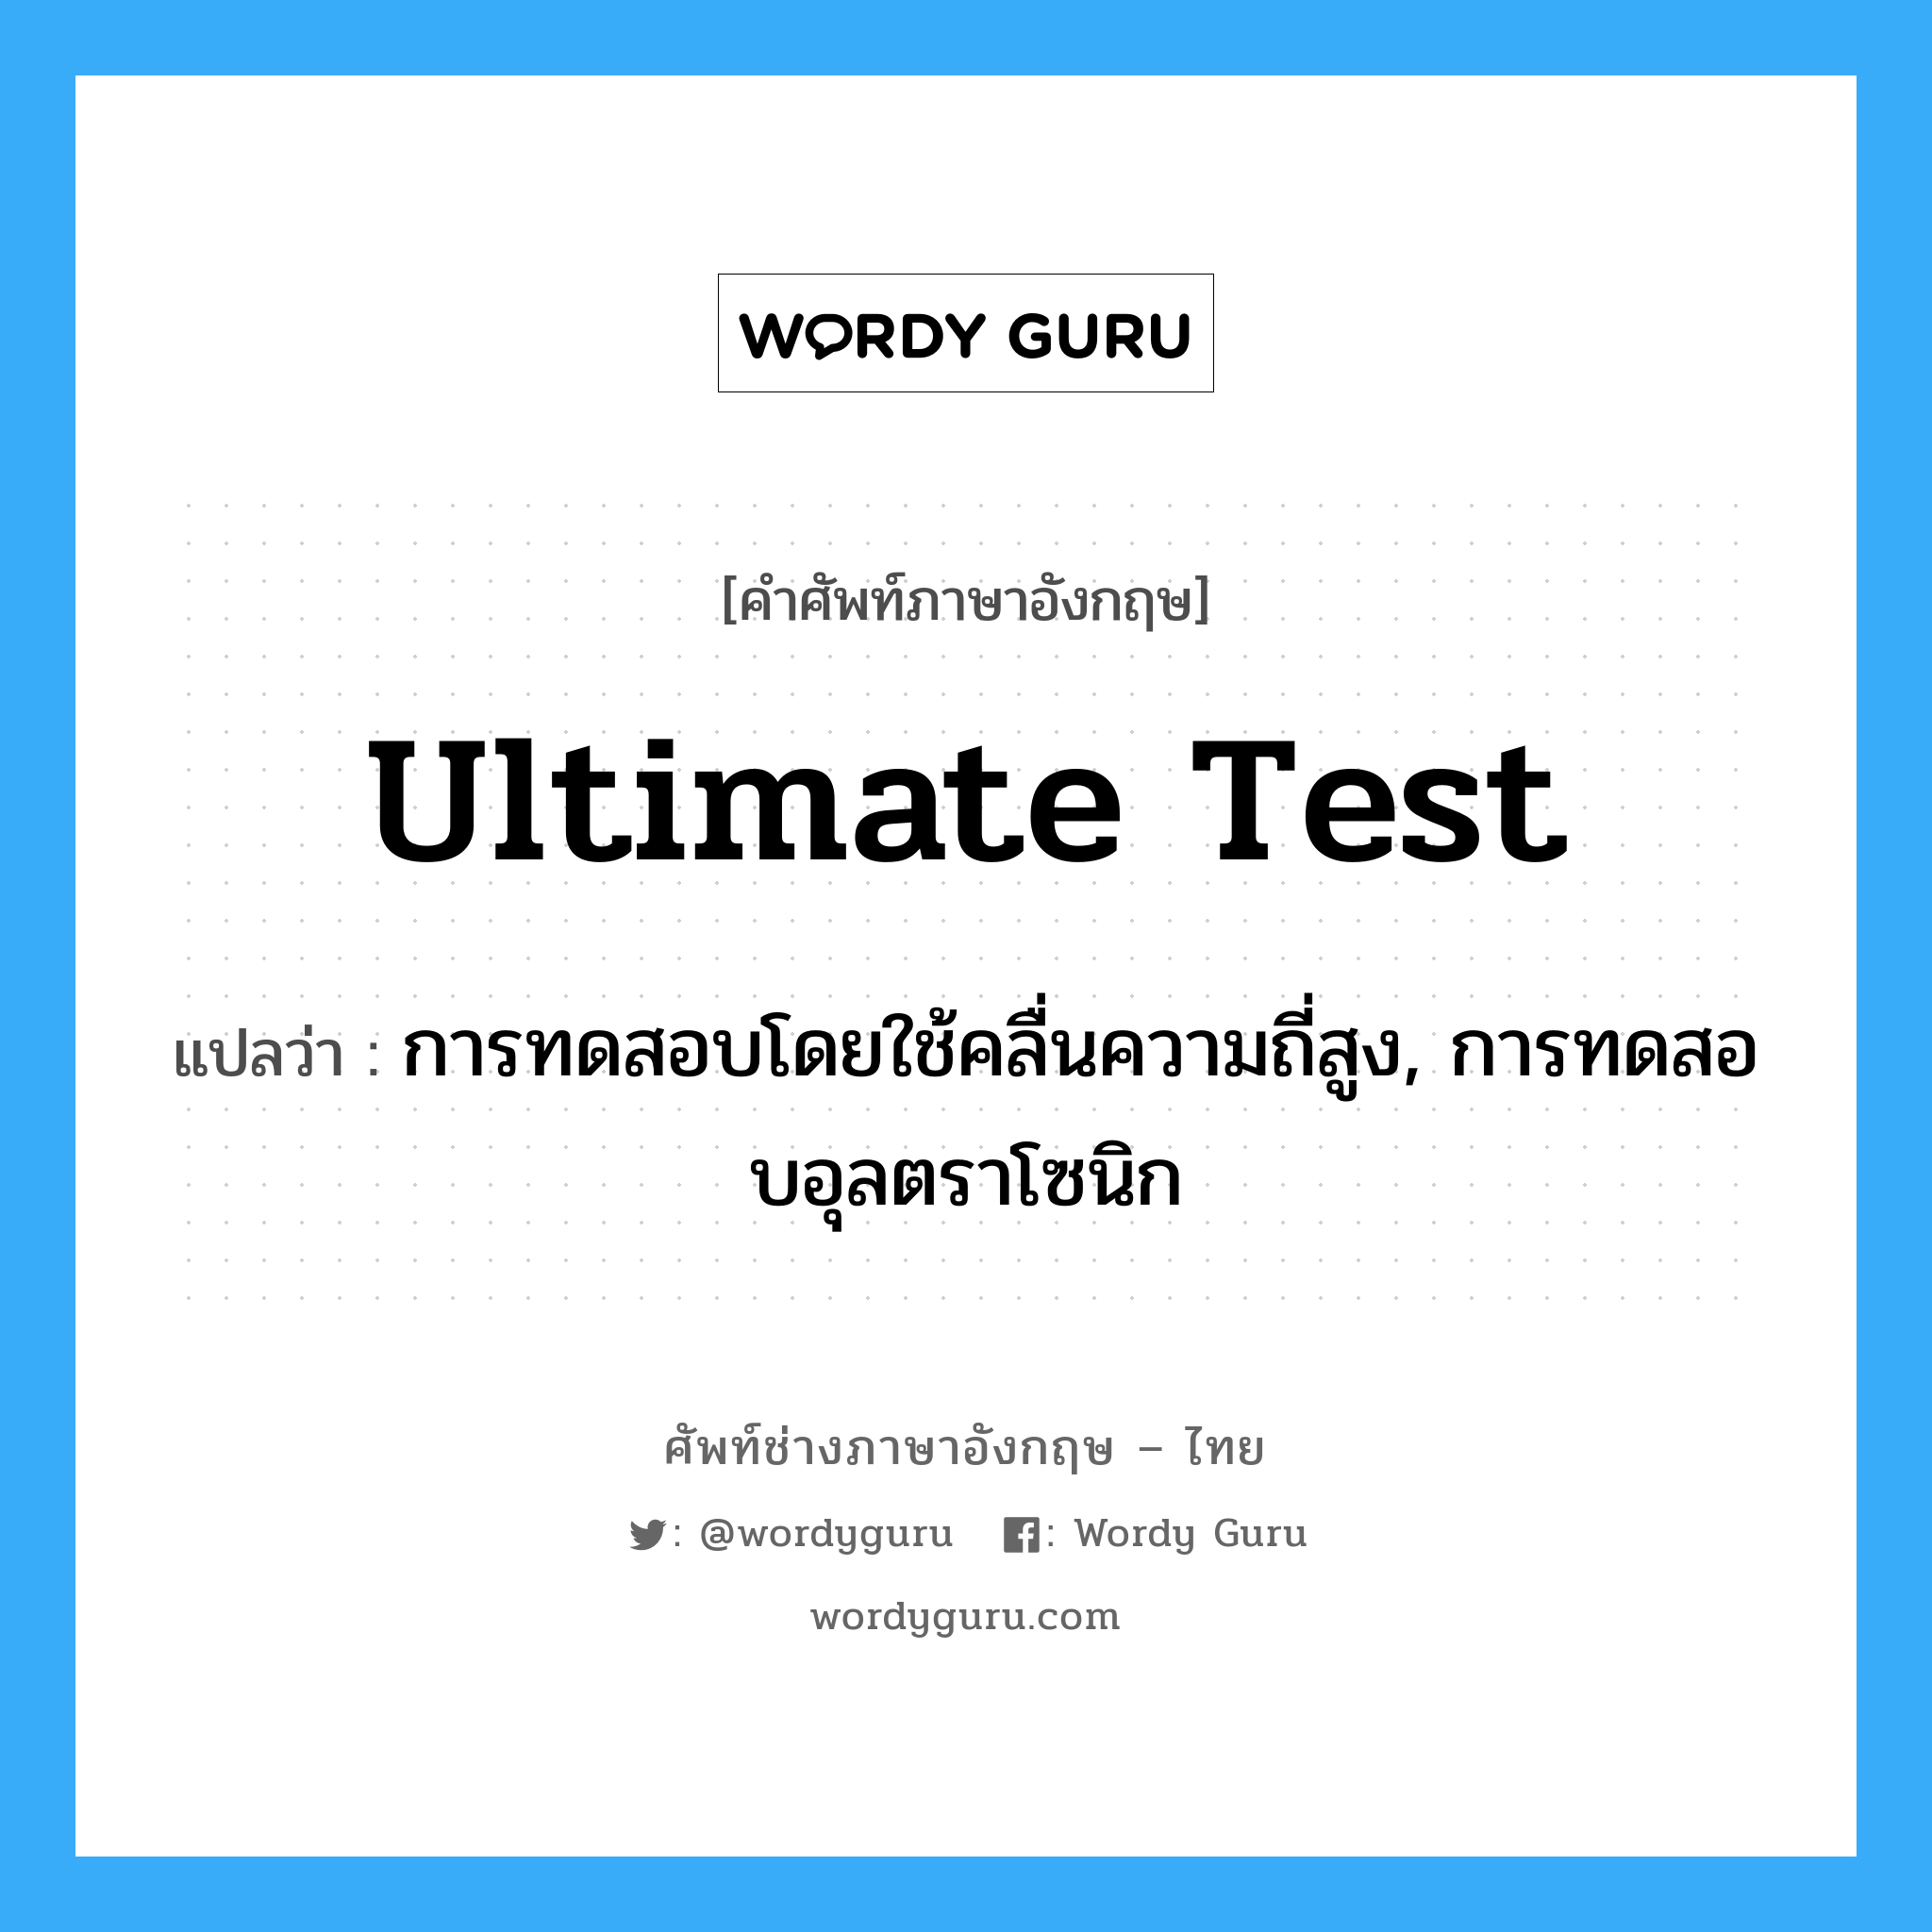 ultimate test แปลว่า?, คำศัพท์ช่างภาษาอังกฤษ - ไทย ultimate test คำศัพท์ภาษาอังกฤษ ultimate test แปลว่า การทดสอบโดยใช้คลื่นความถี่สูง, การทดสอบอุลตราโซนิก